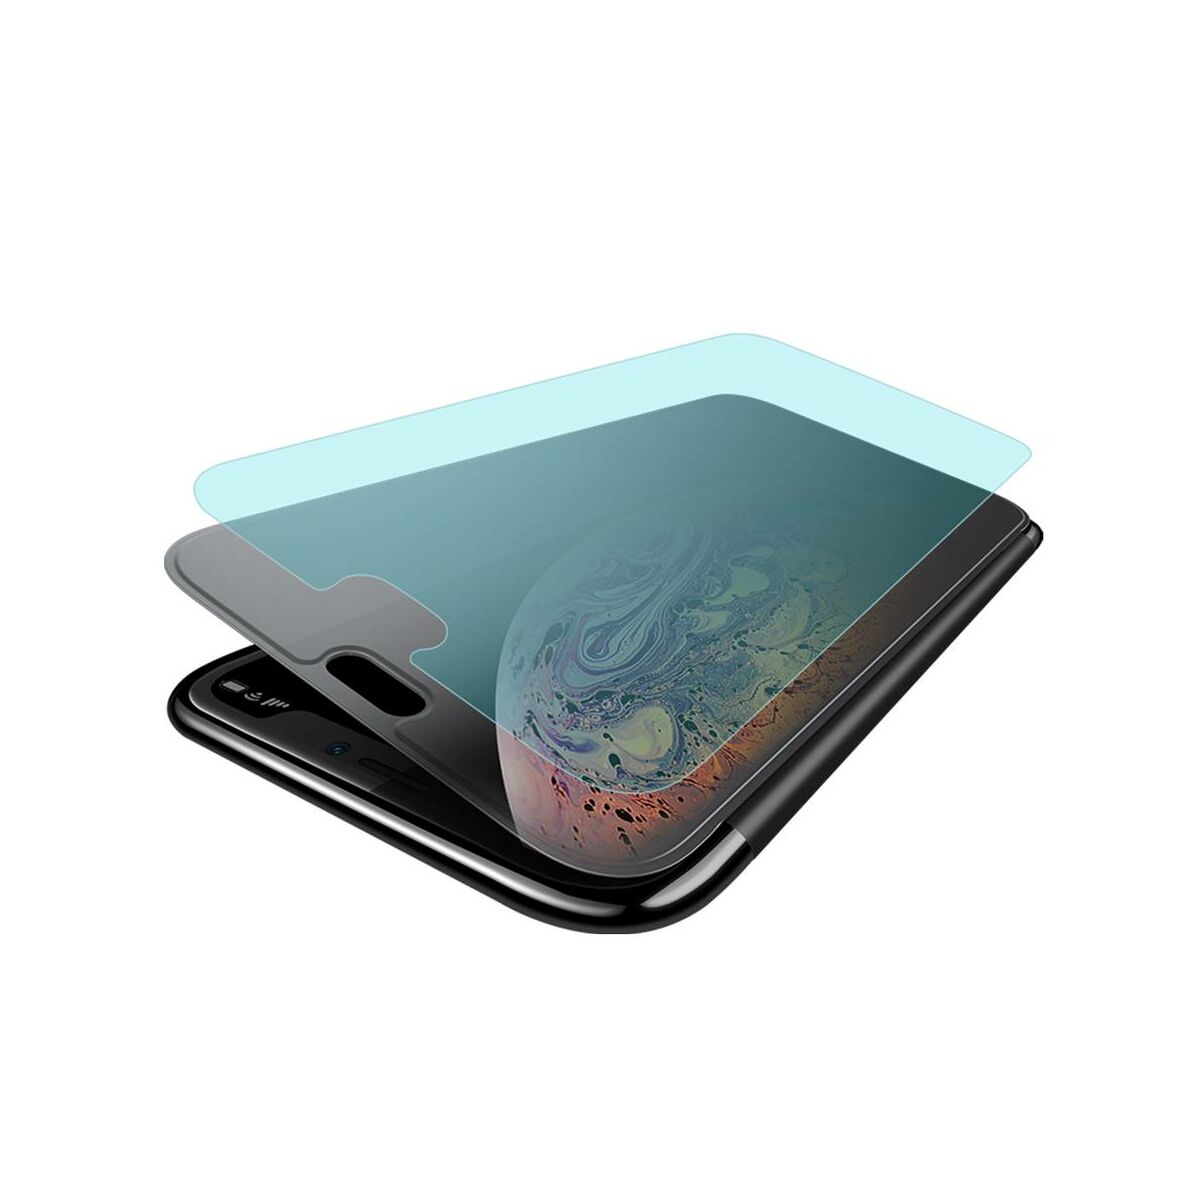 Kép 3/8 - Baseus iPhone XS Max tok, Touchable kihajtható, érintőfelületű flip tok, fekete (WIAPIPH65-TS01)